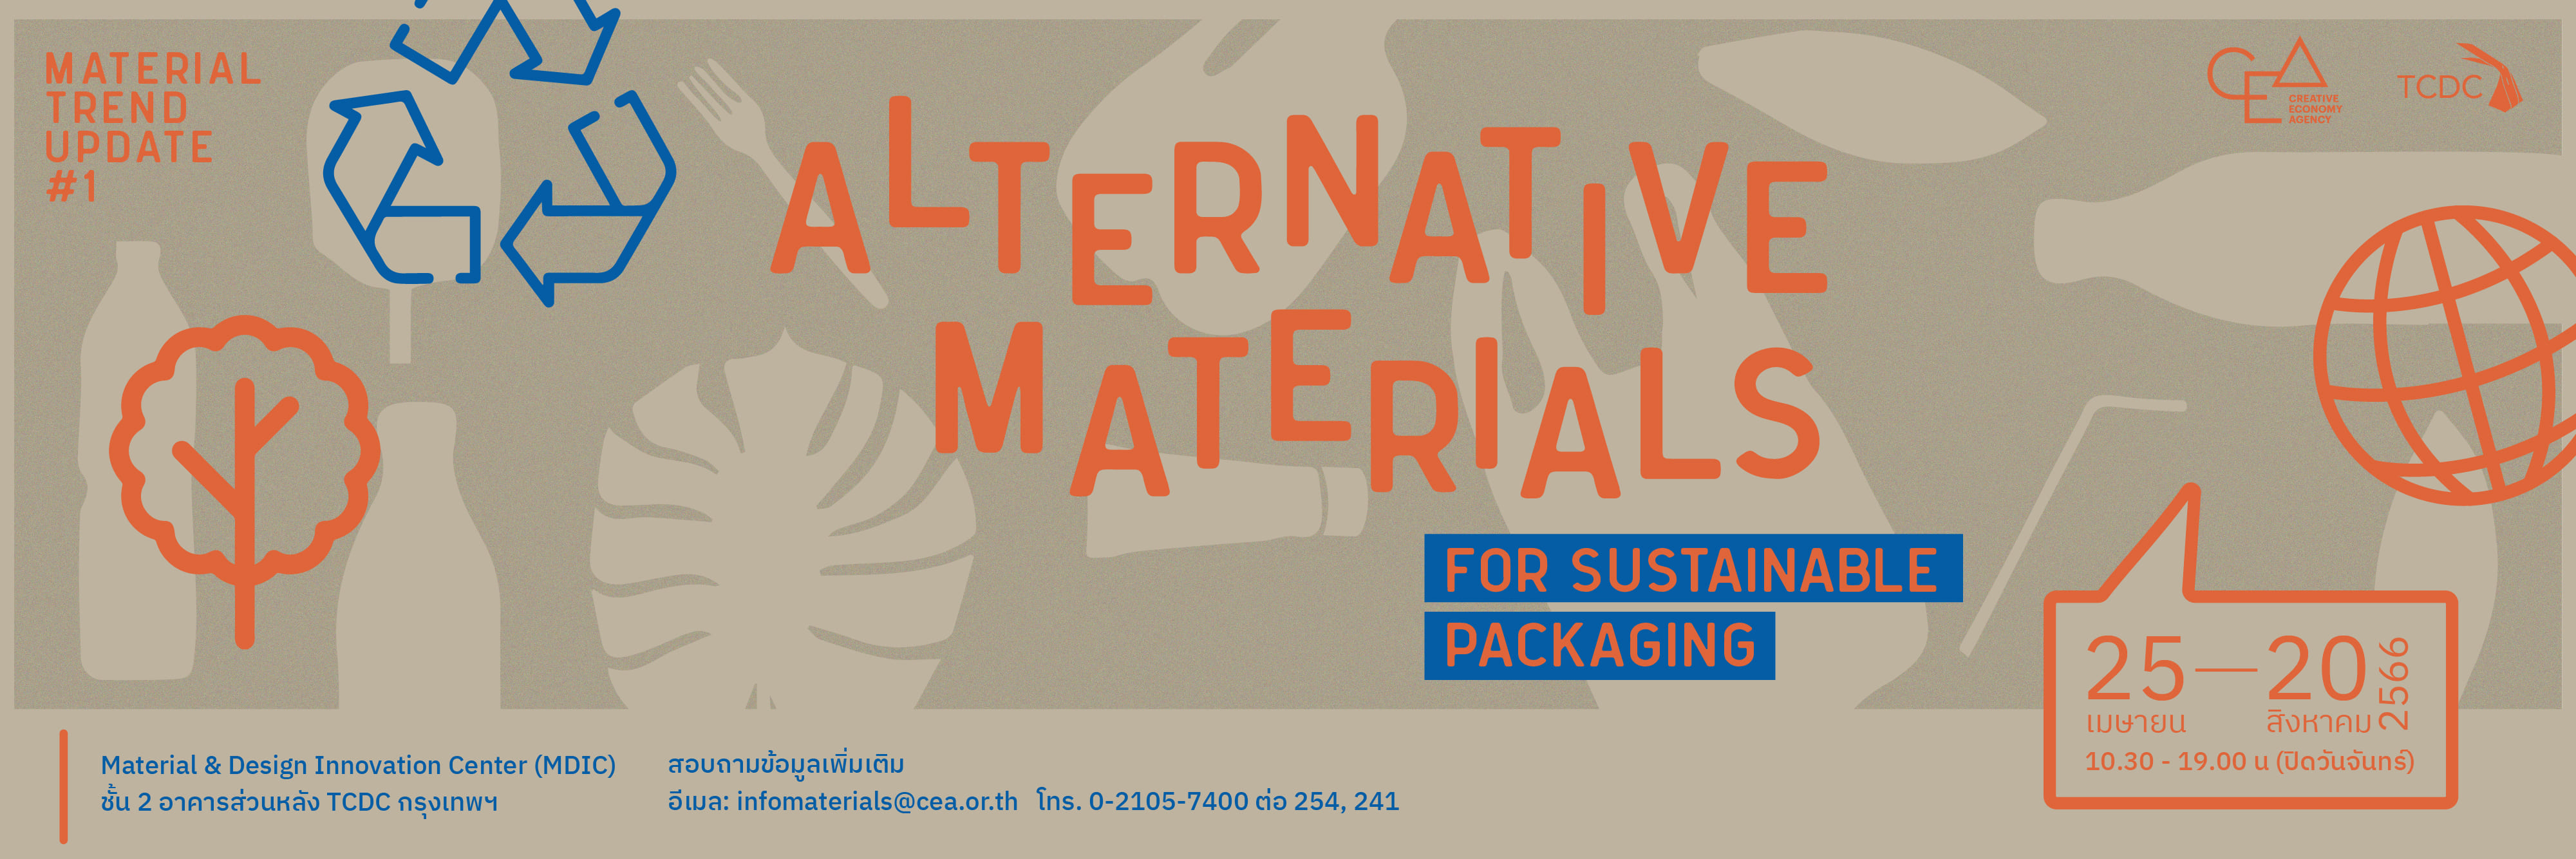 การจัดแสดงวัสดุ Altermative Materials For Sustainable Packaging